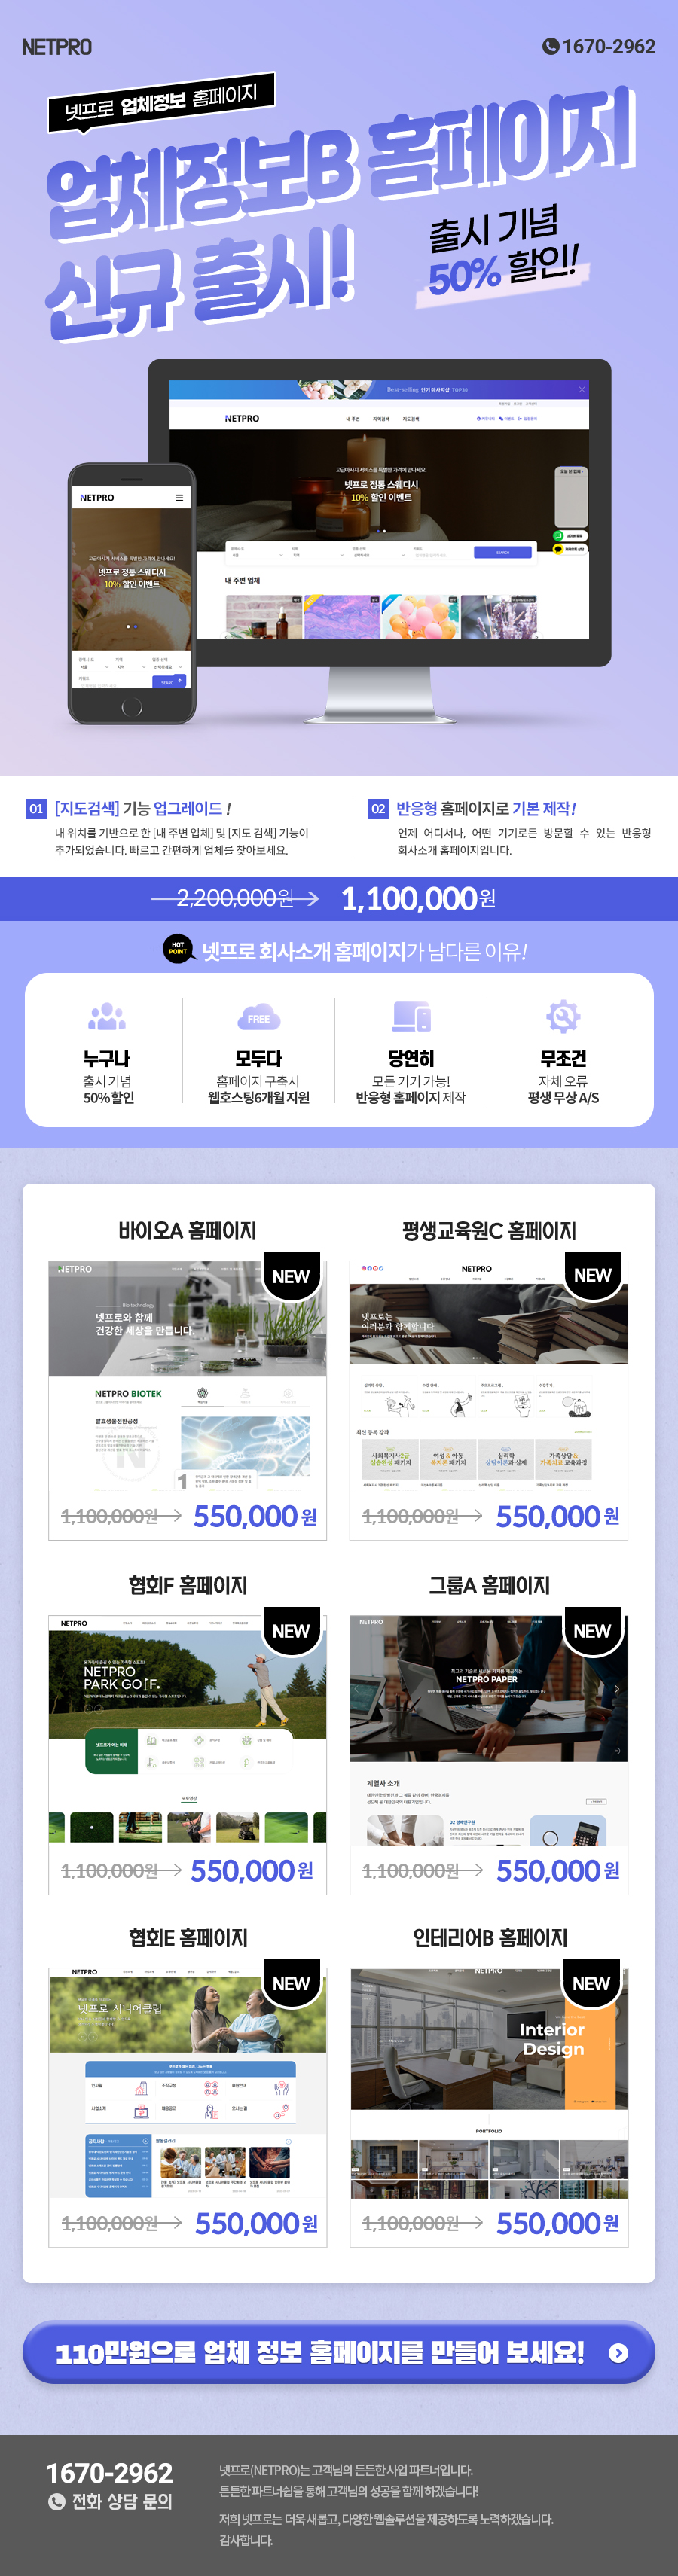 넷프로 기능성 업체정보B 홈페이지 신규 출시!